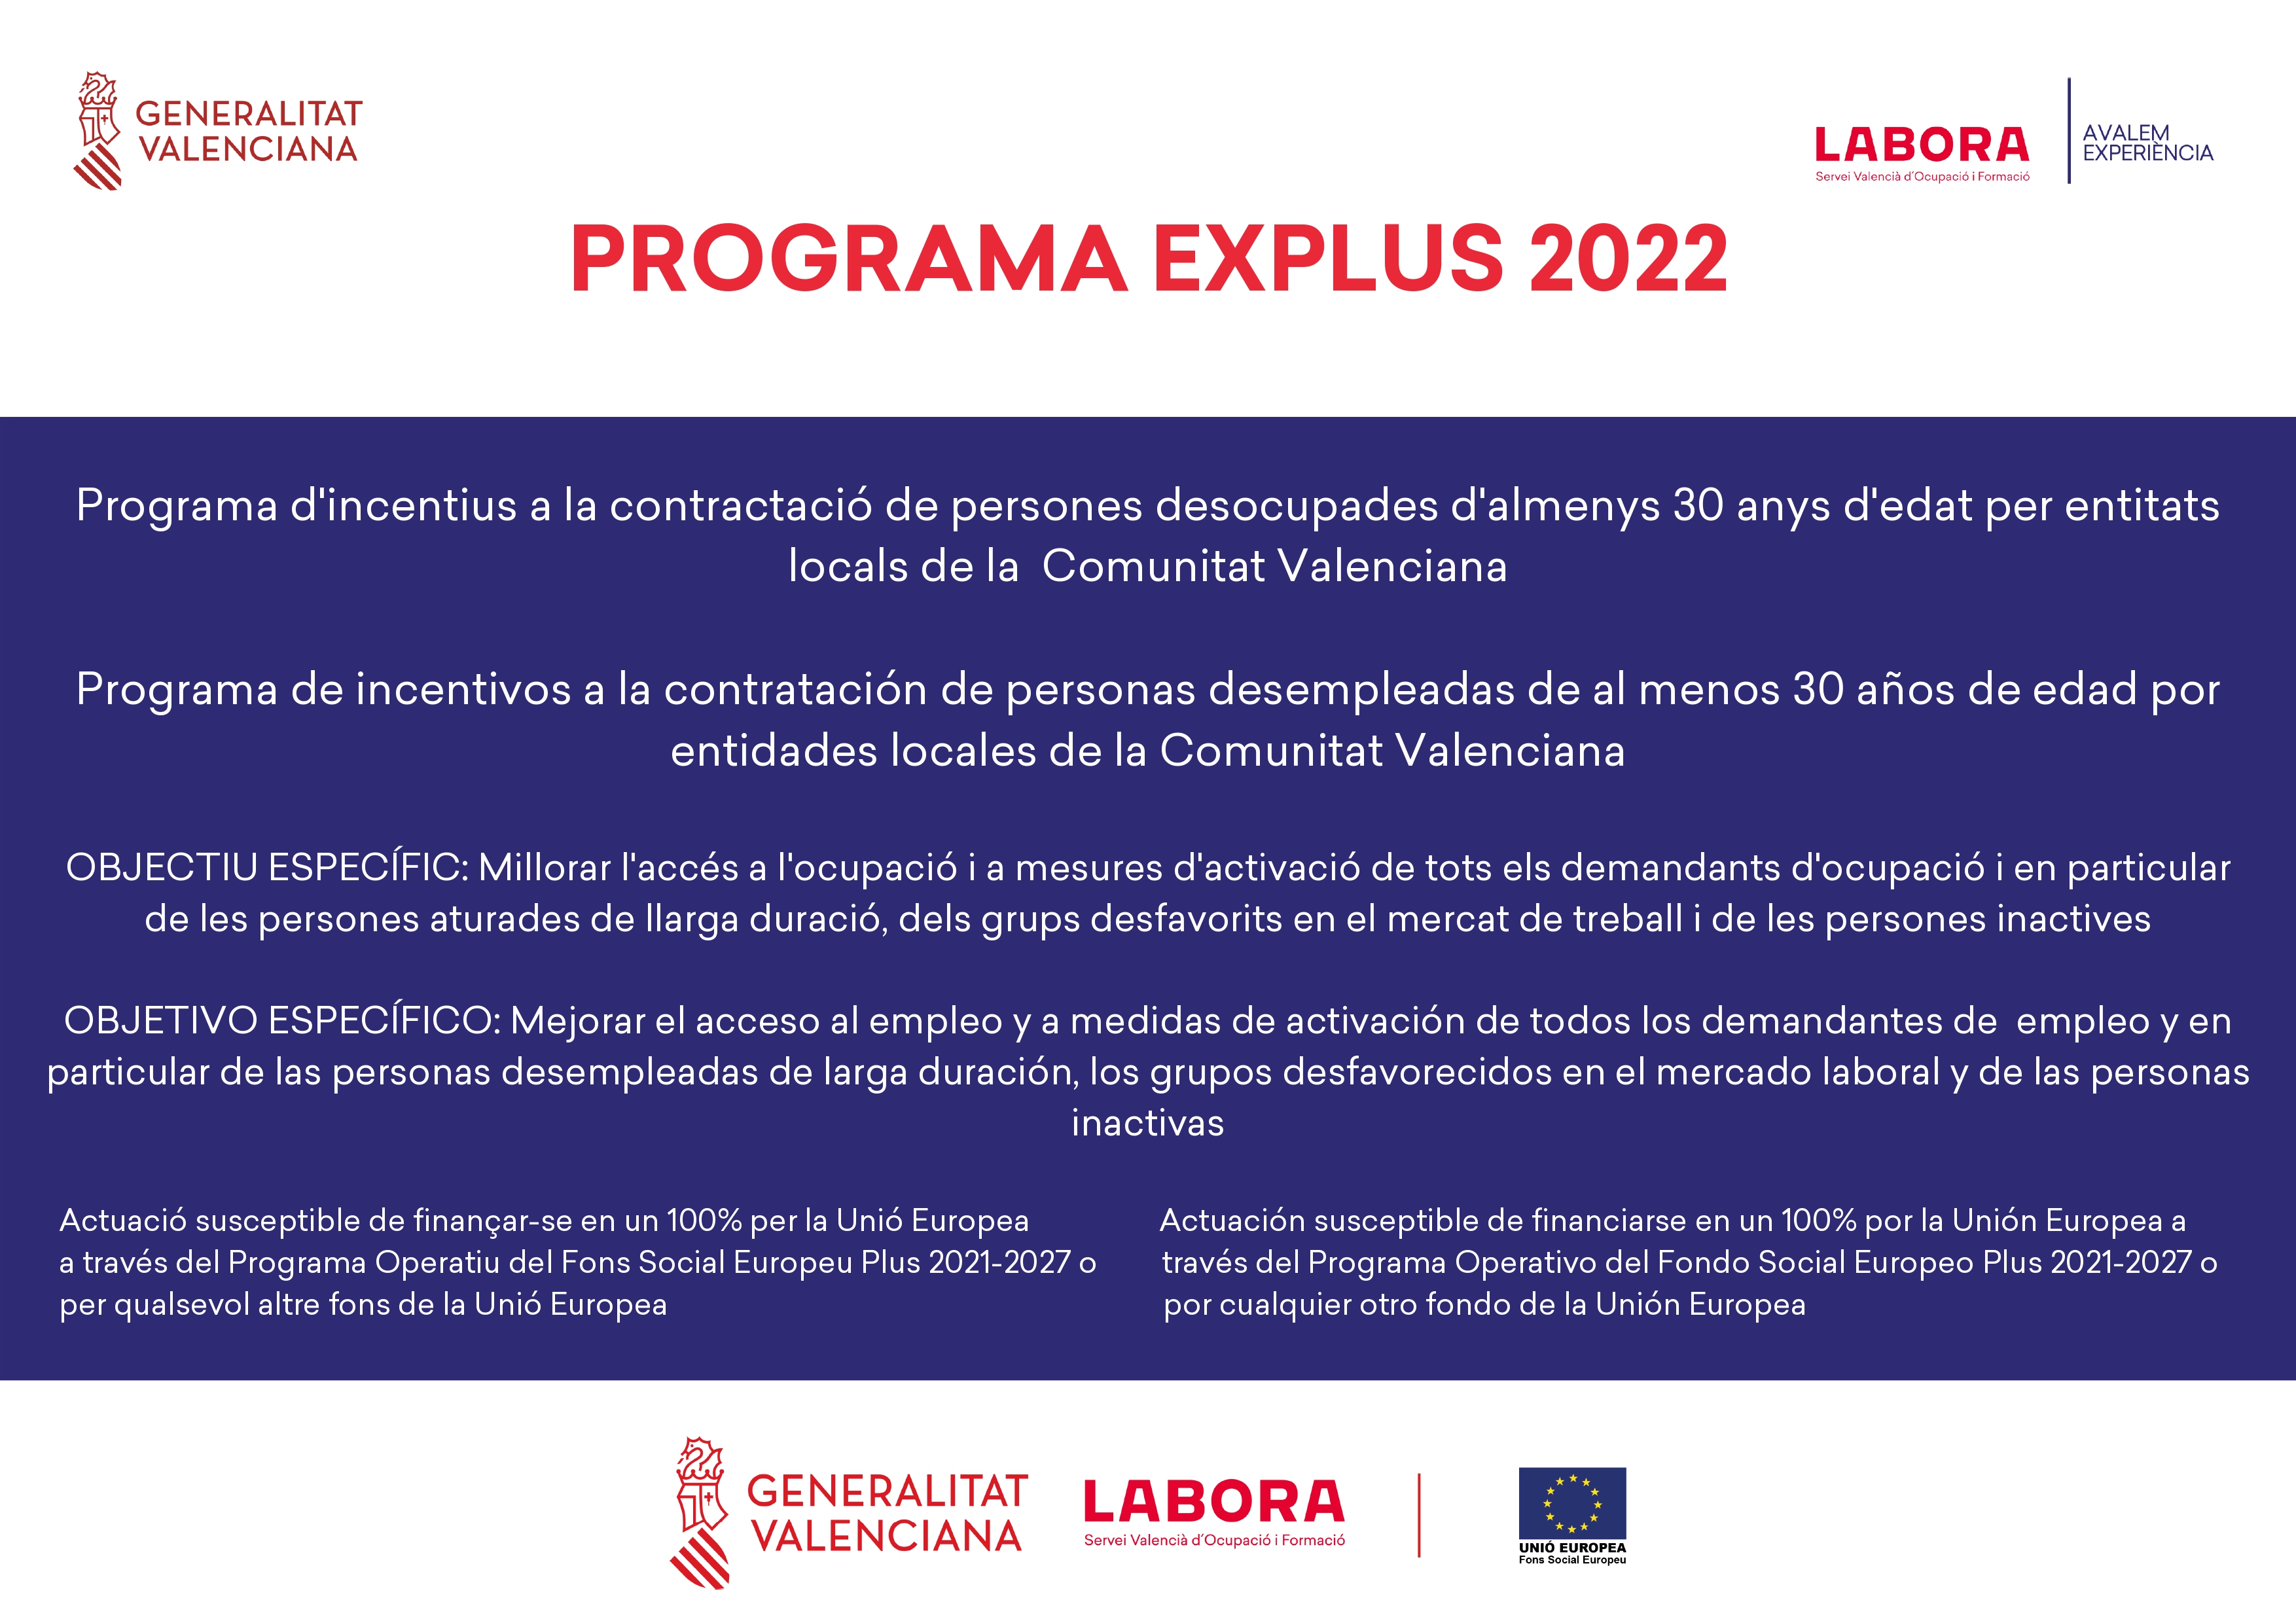 L'Ajuntament d'Aielo de Malferit contracta 3 persones desocupades amb el programa EXPLUS 2022